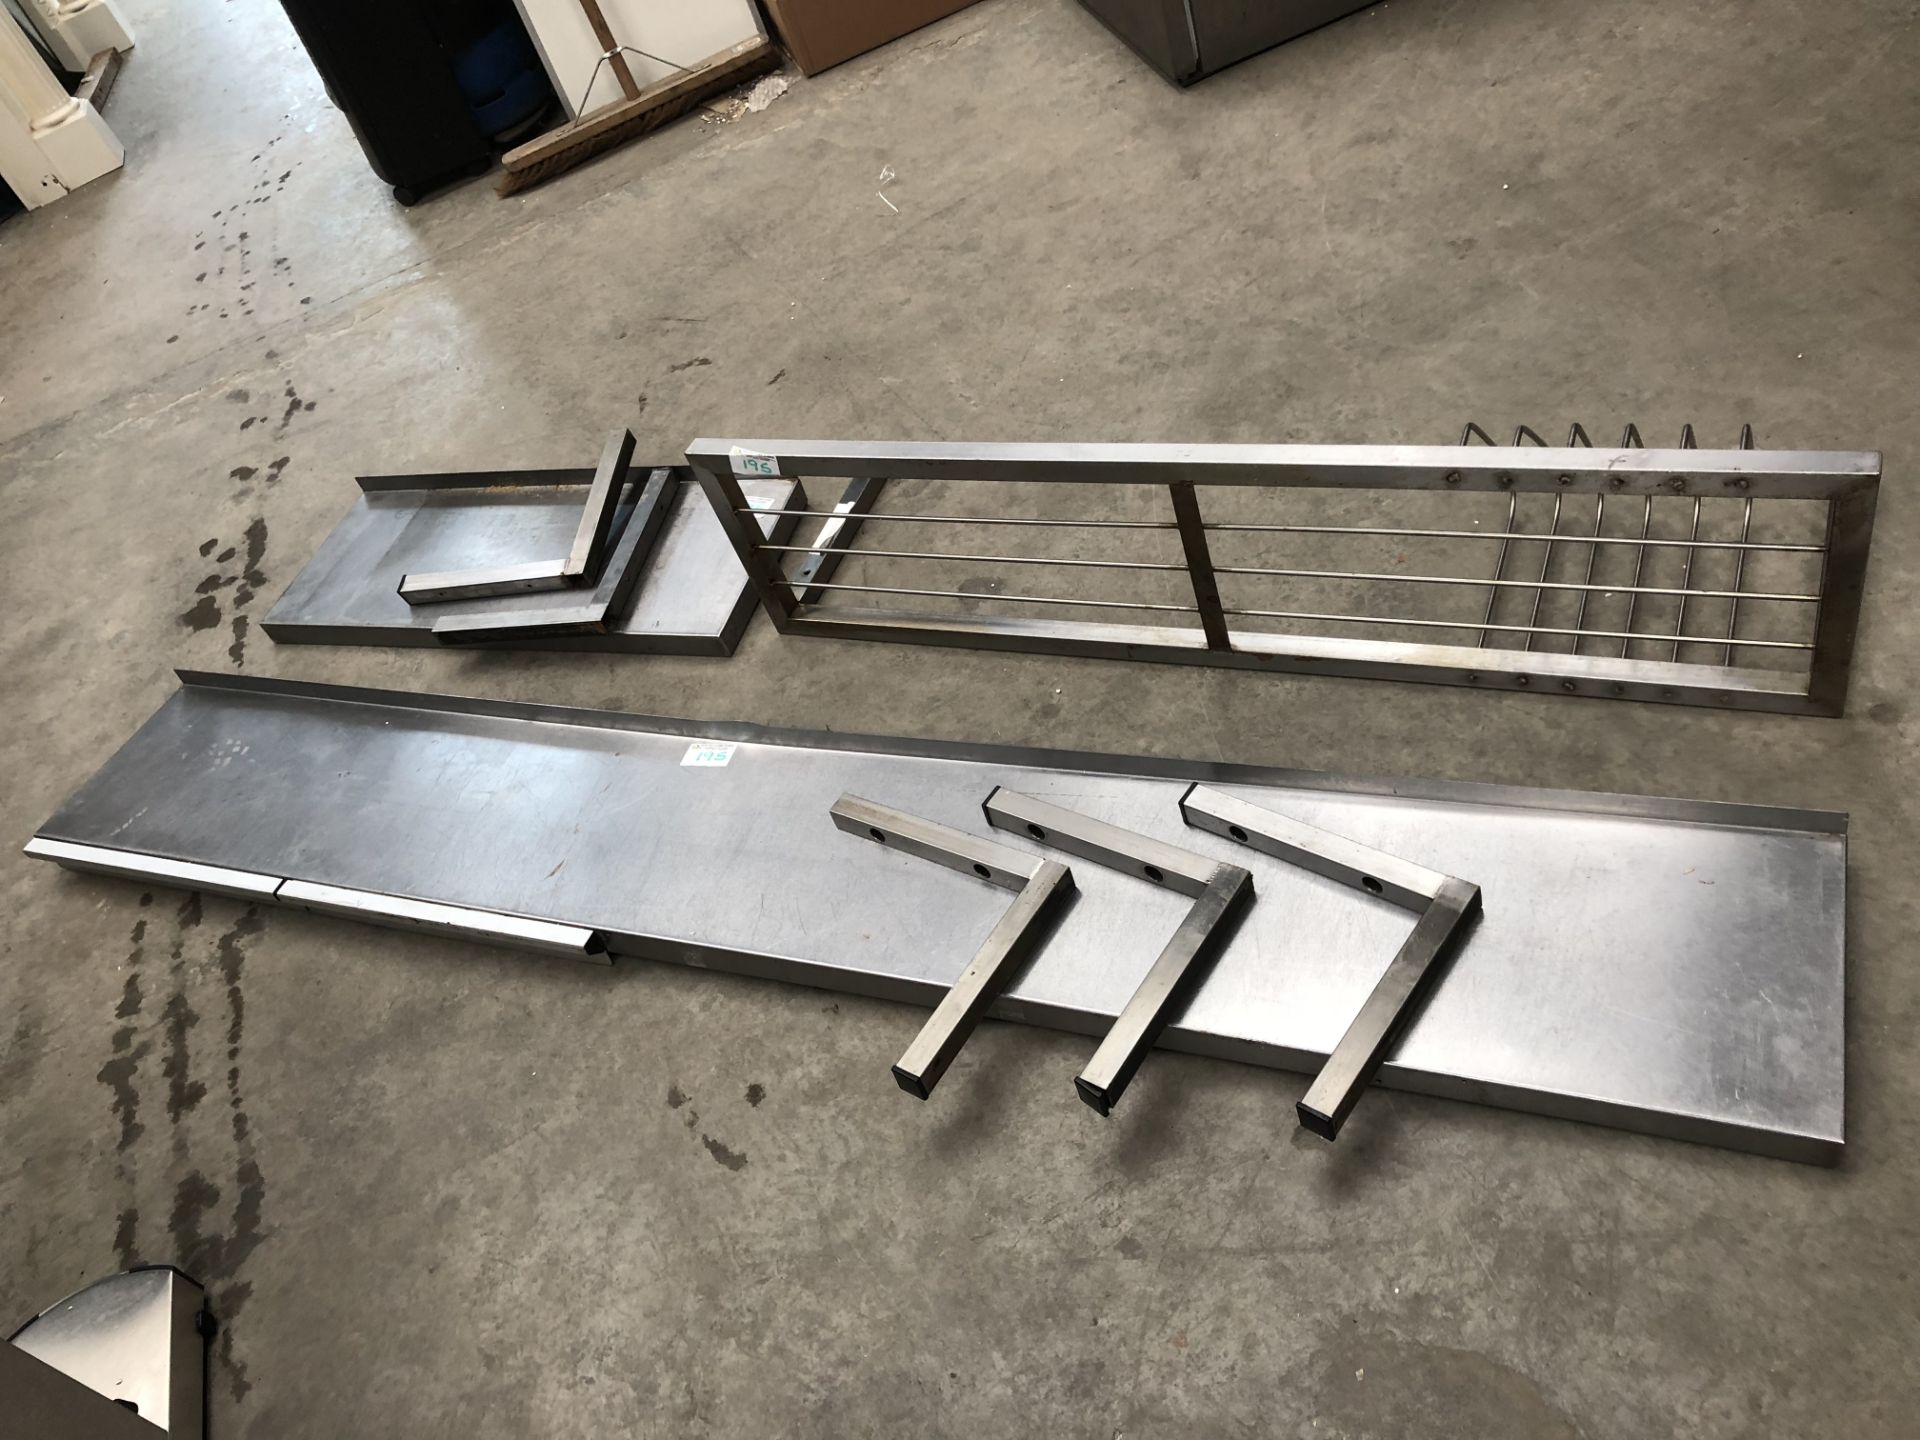 3 x Stainless Steel Shelves